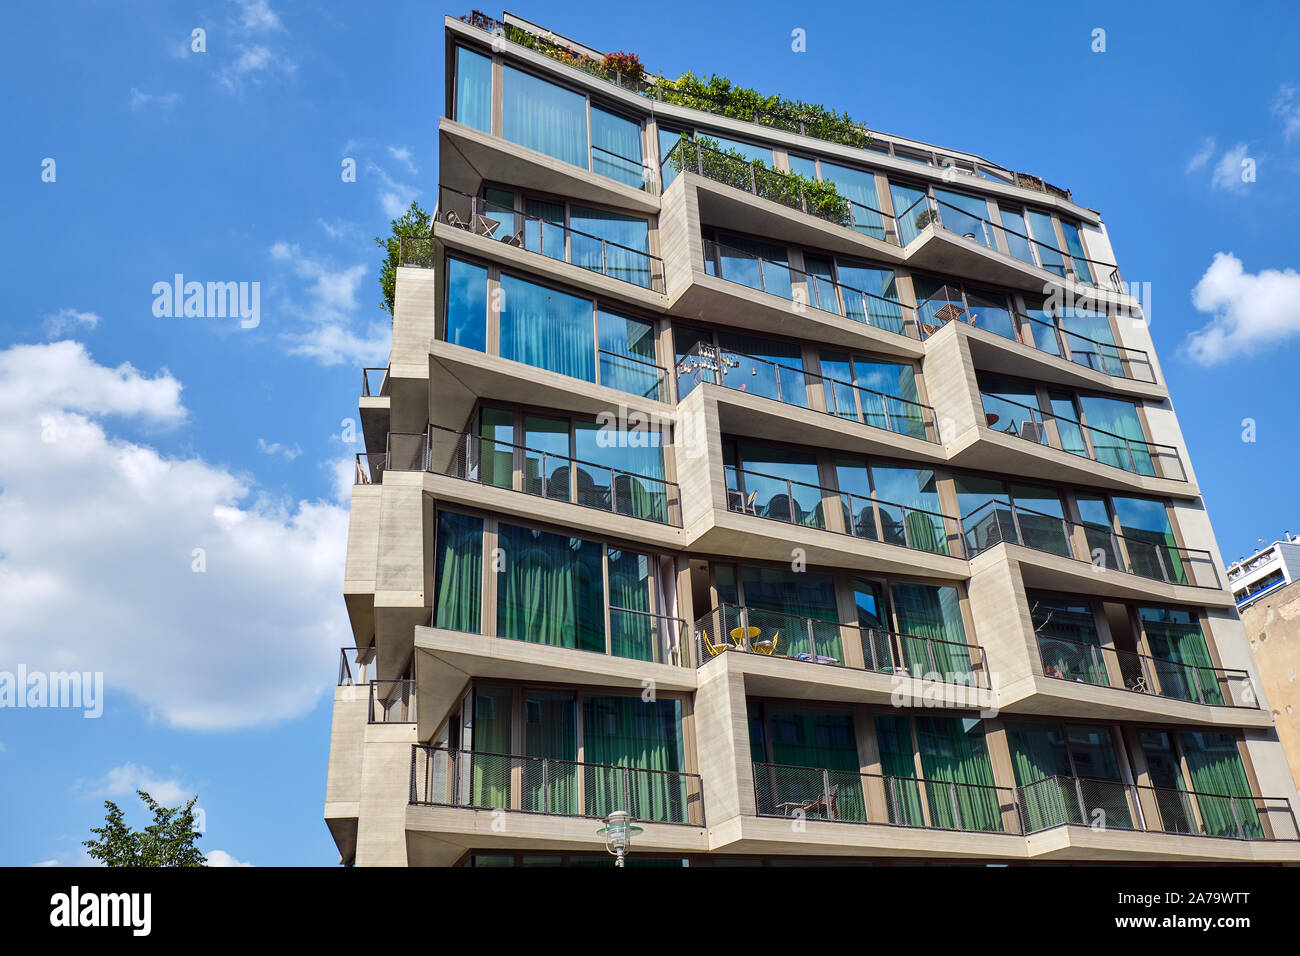 Nuevo edificio de apartamentos con ventanas de piso a techo visto en Berlín, Alemania Foto de stock